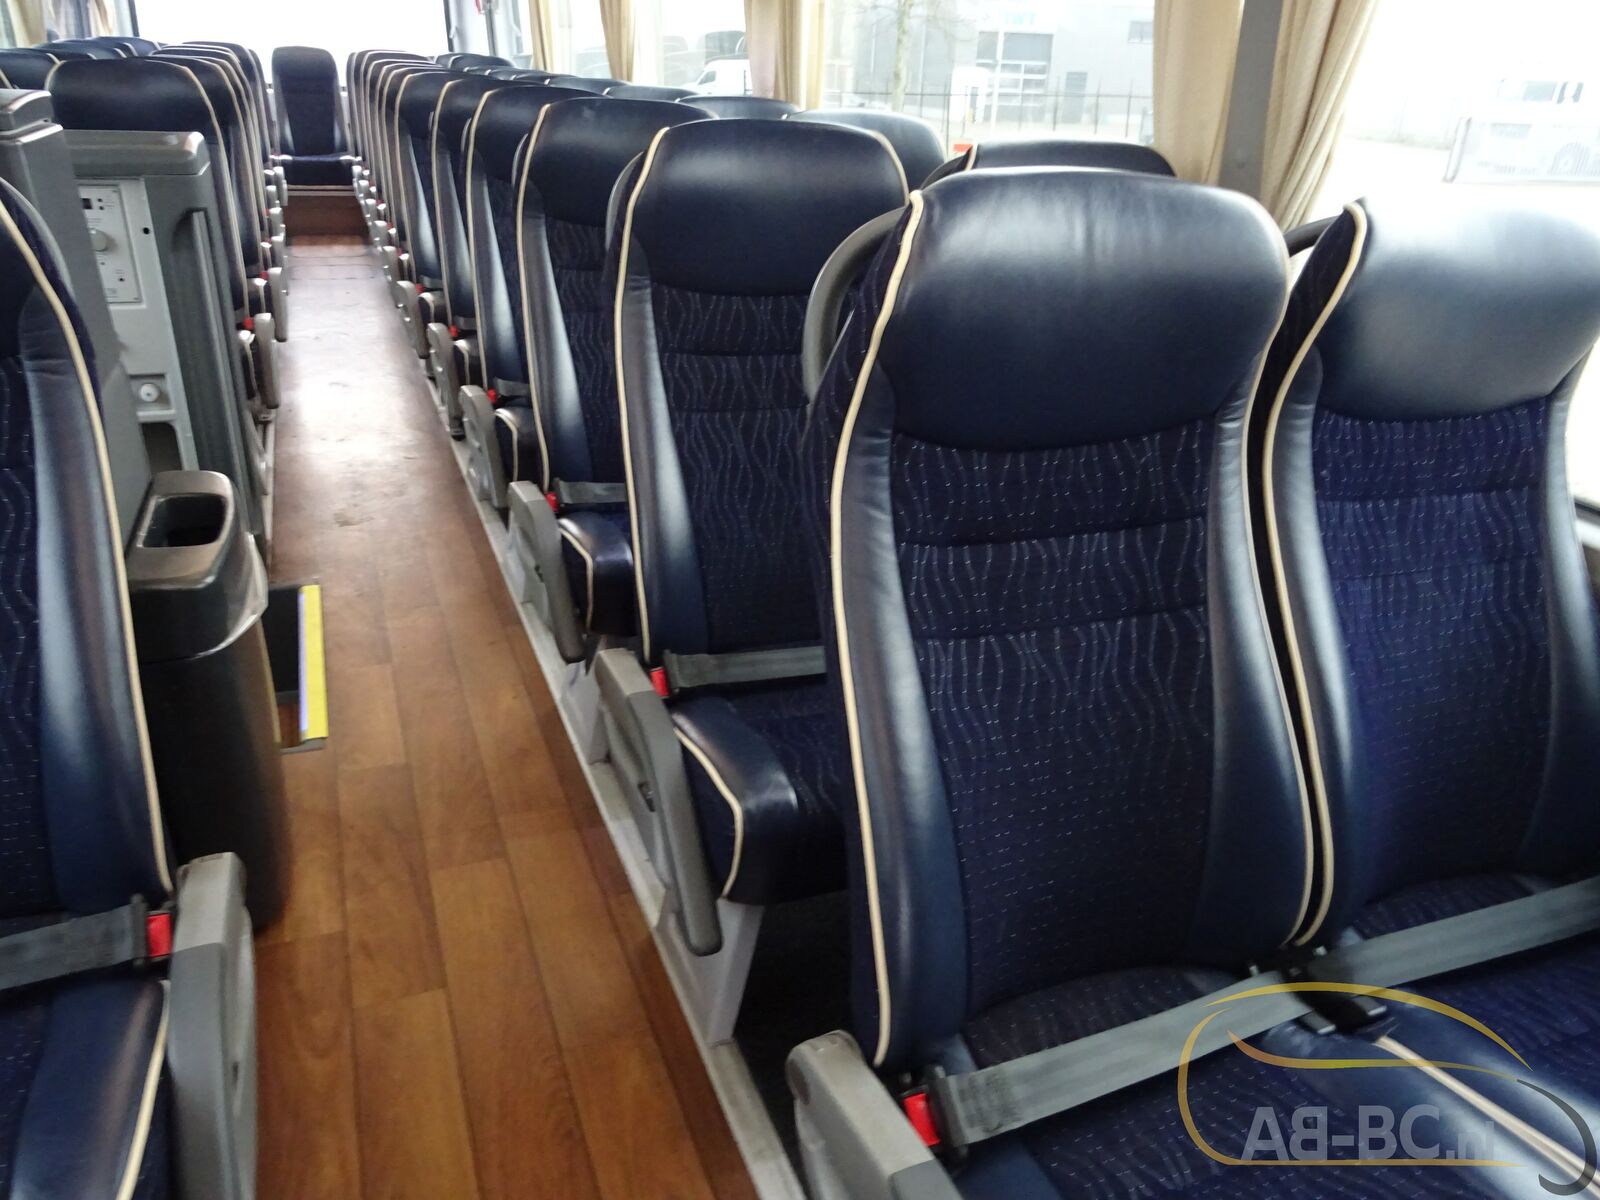 coach-bus-MAN-R08-Lions-Coach-59-Seats-EURO-6-6-wheelchair-places---1675763502156320999_orig_19cdc7046947795cf1594dada69d14d5--23020711482134347500